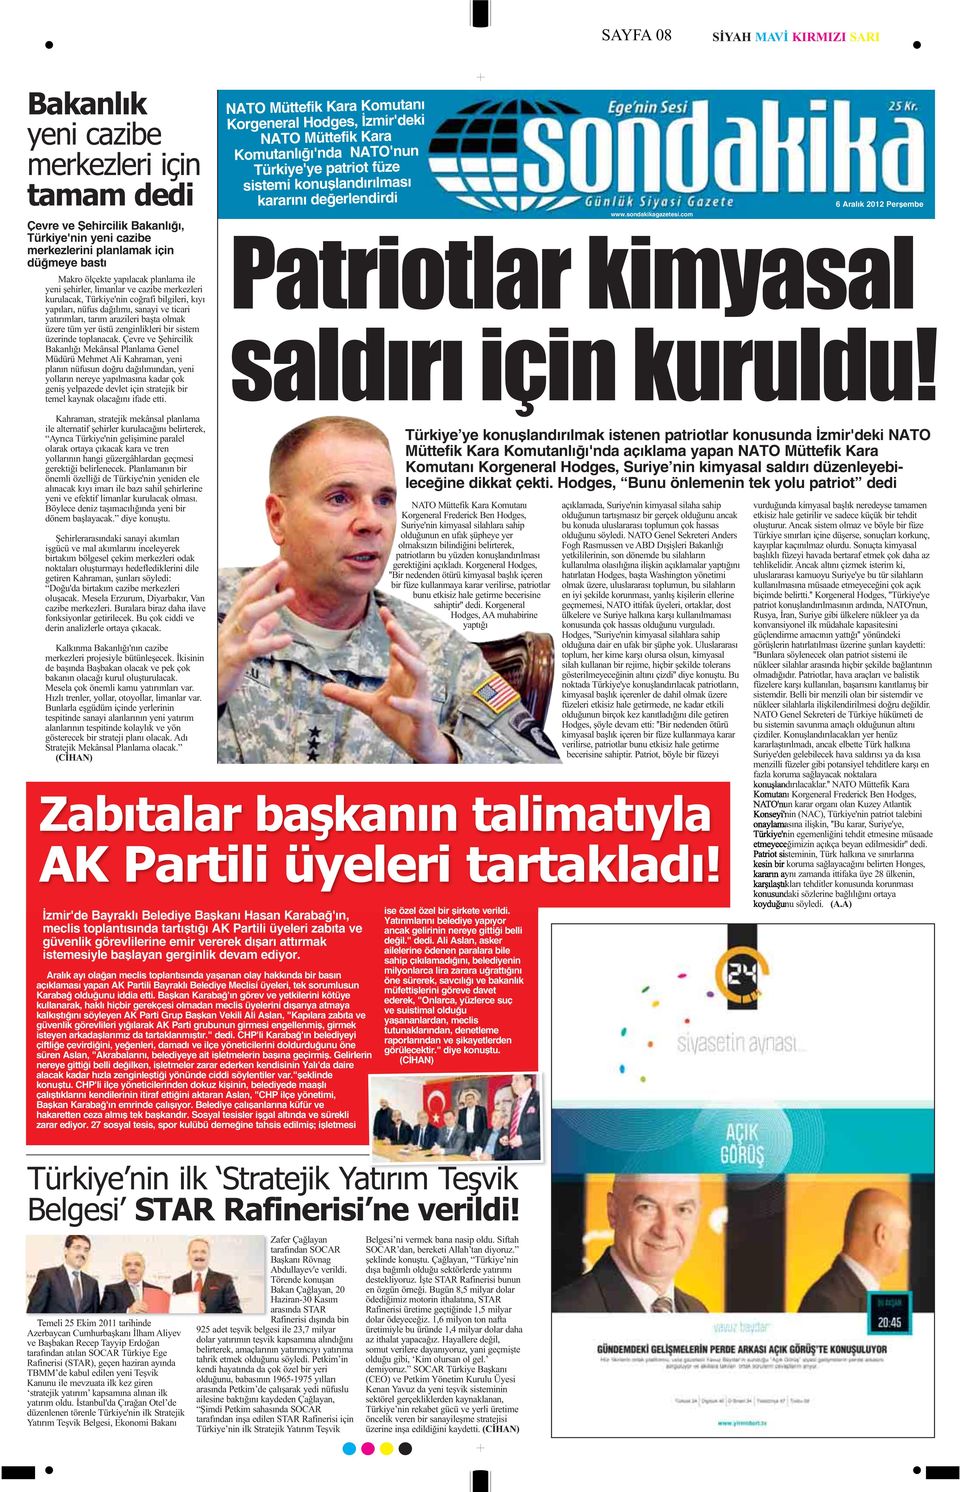 com İzmir'de Bayraklı Belediye Başkanı Hasan Karabağ'ın, meclis toplantısında tartıştığı AK Partili üyeleri zabıta ve güvenlik görevlilerine emir vererek dışarı attırmak istemesiyle başlayan